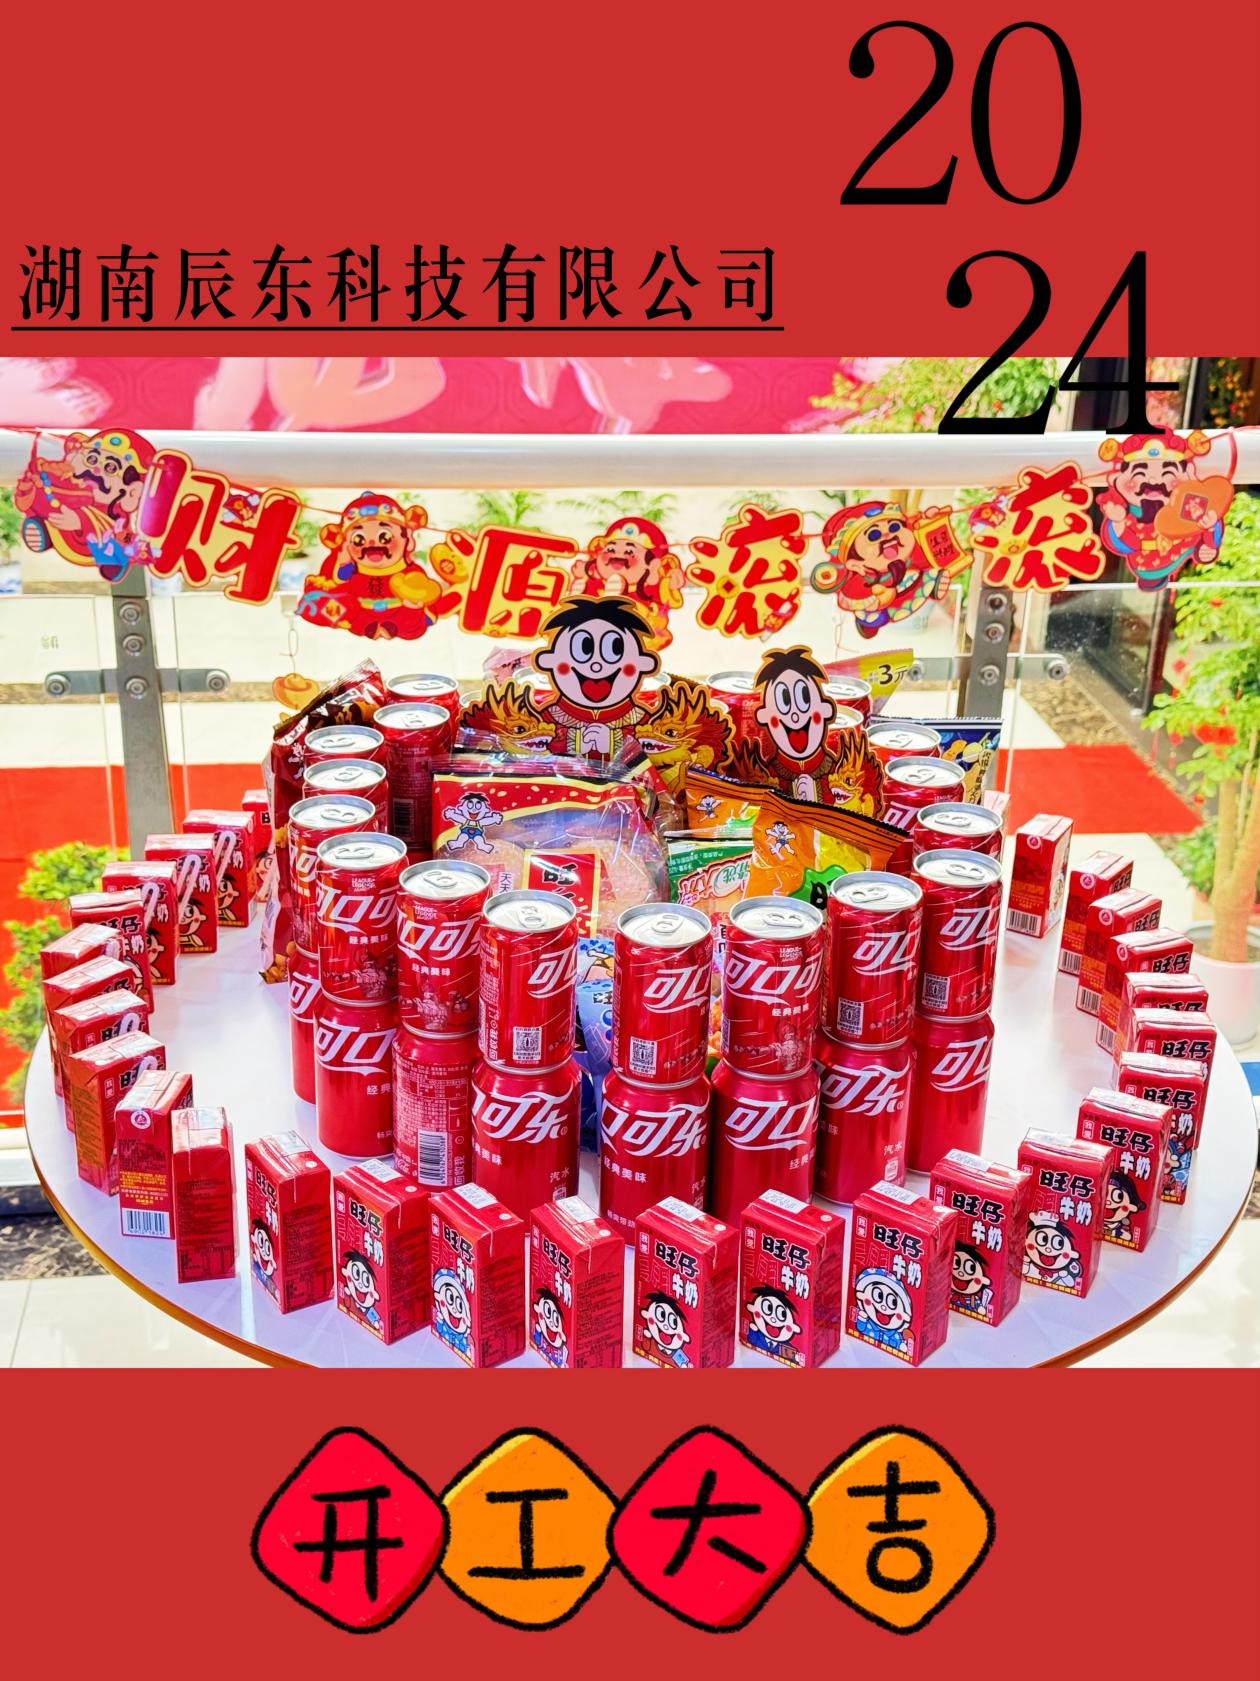 Hunan Chendong Technology Company tangazve basa mushure meChinese New Year.